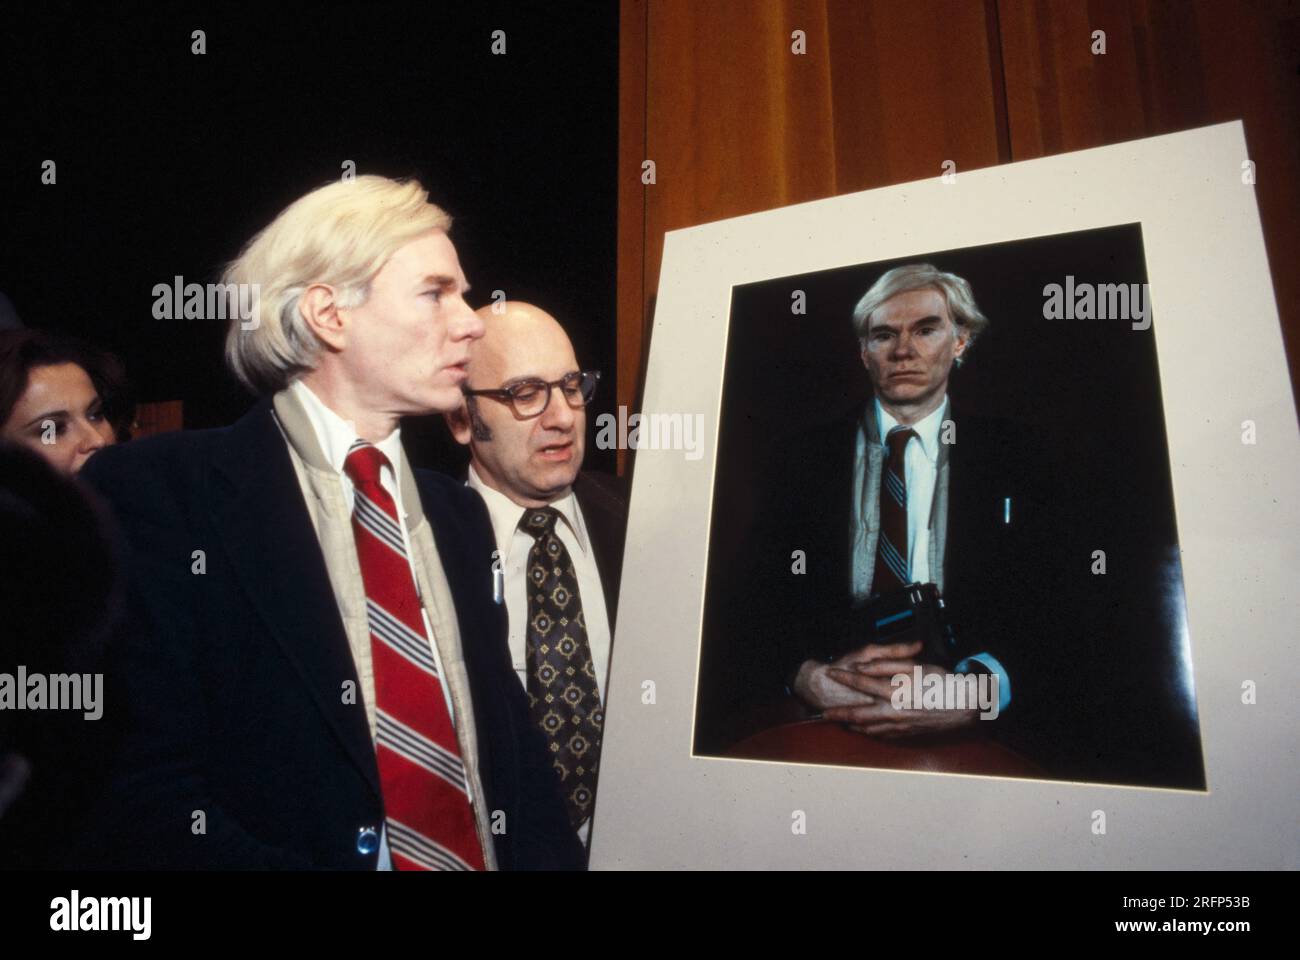 Popkünstler Andy Warhol mit einem 20 x 24 großen Polaroid-Porträt von sich selbst. Foto von Bernard Gotfryd Stockfoto